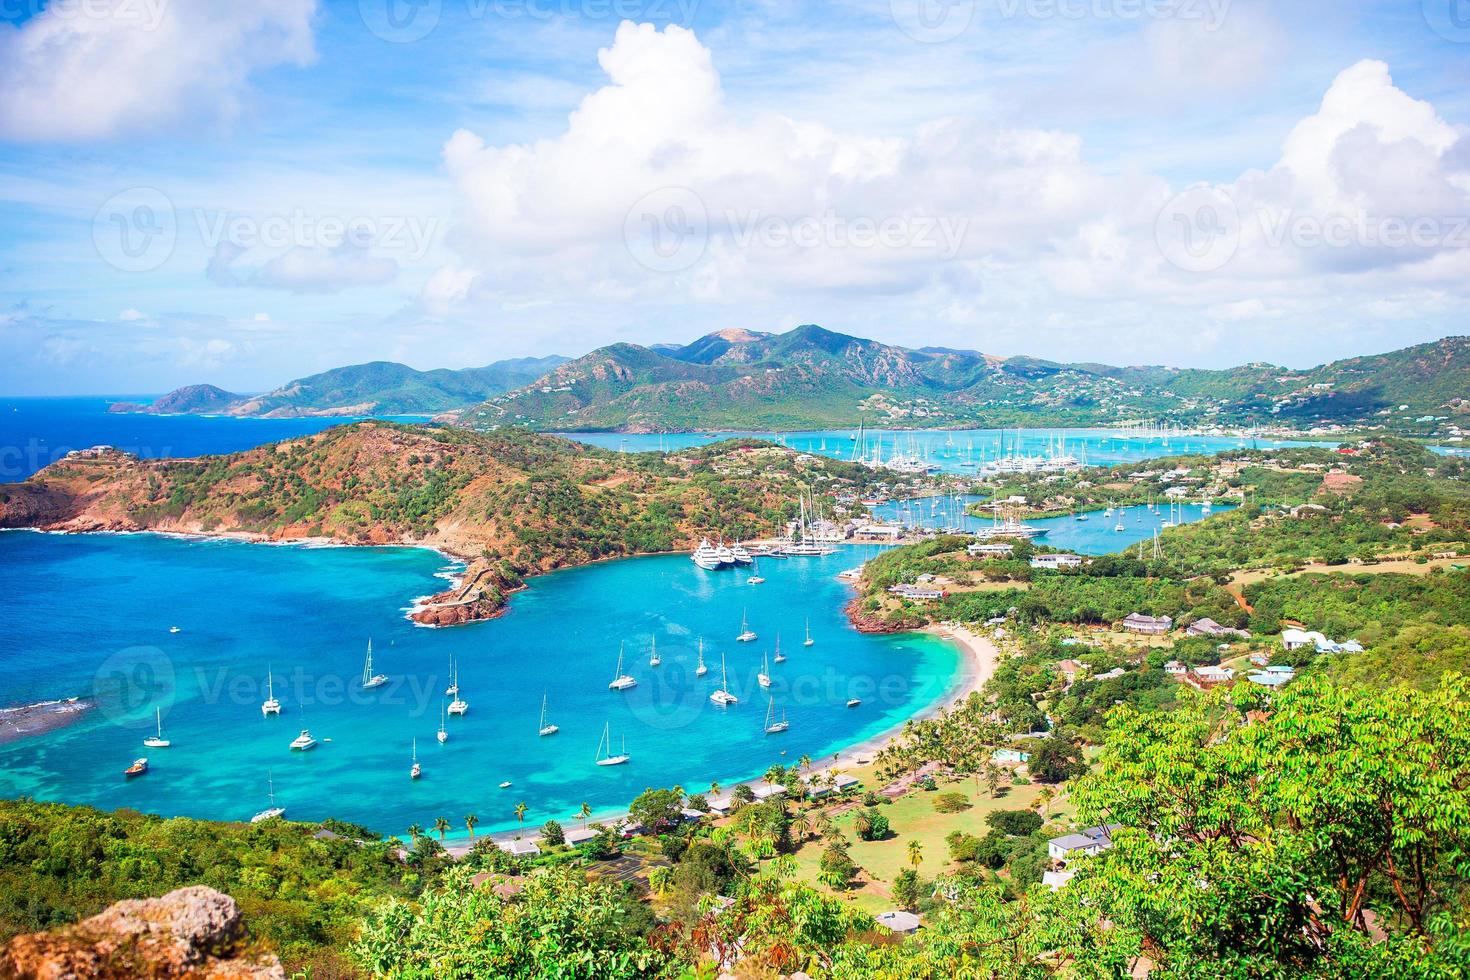 Visualizza di inglese porto a partire dal Shirley altezza, antigua, Paradiso baia a tropicale isola nel il caraibico mare foto